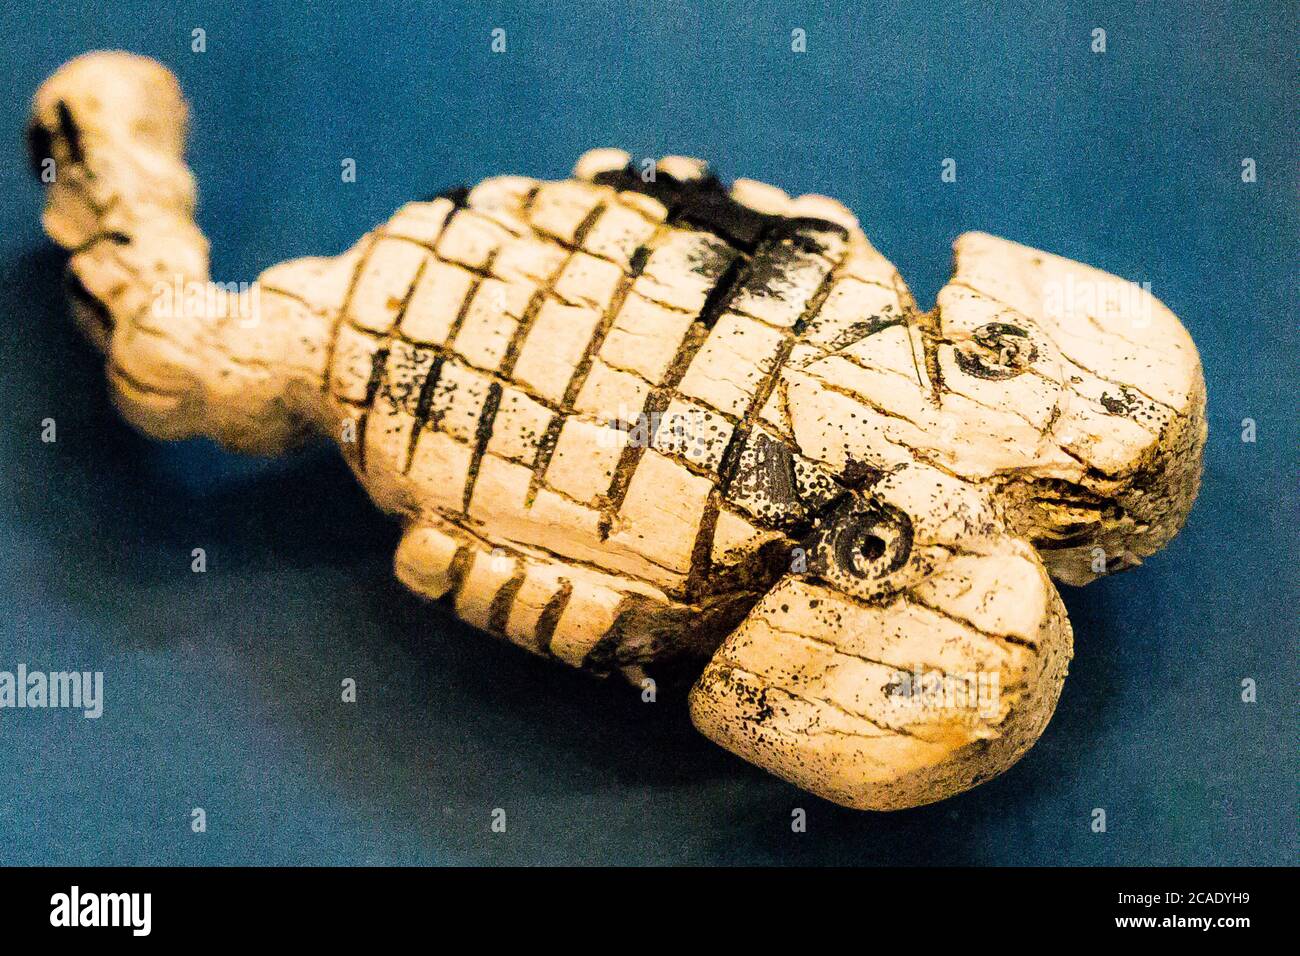 Egipto, el Cairo, Museo Egipcio, estatuilla procedente de Tell el Farkha, período Dynástico temprano, en colmillo de hipopótamo. Escorpio. Foto de stock